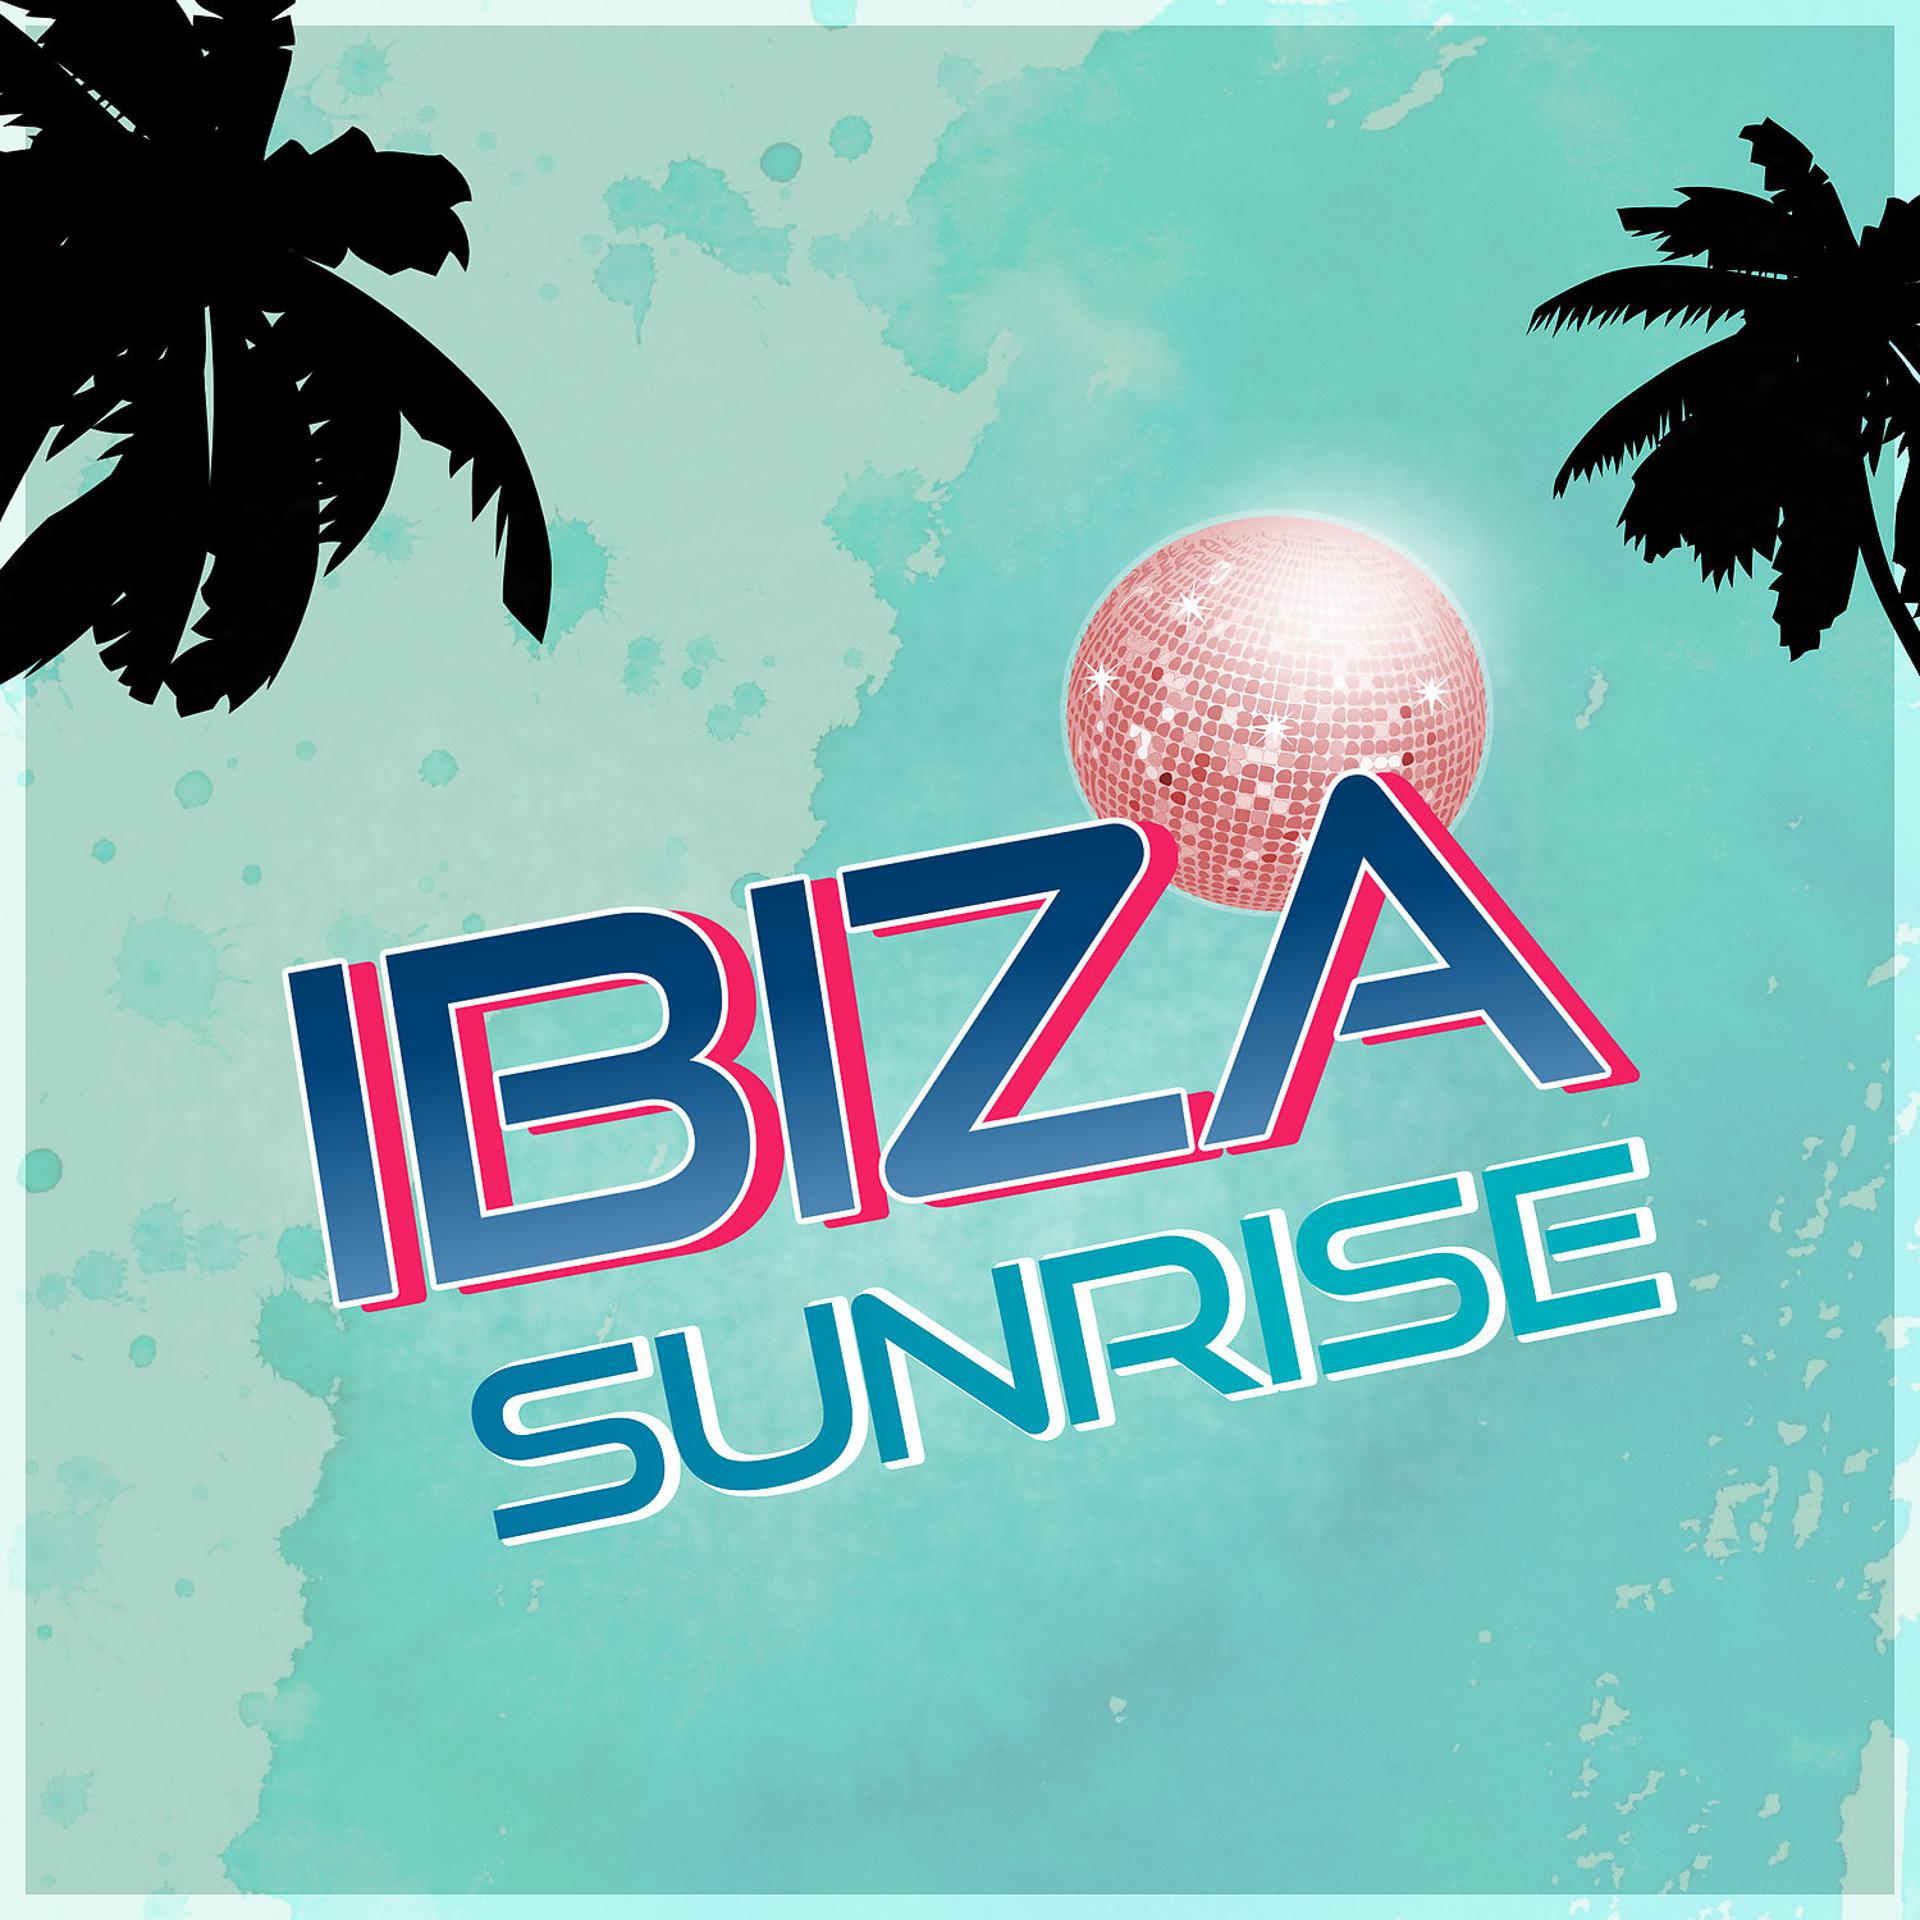 Chilled ibiza. Chillax обои. Ибица флаг. Chill out Ibiza Sunrise session.